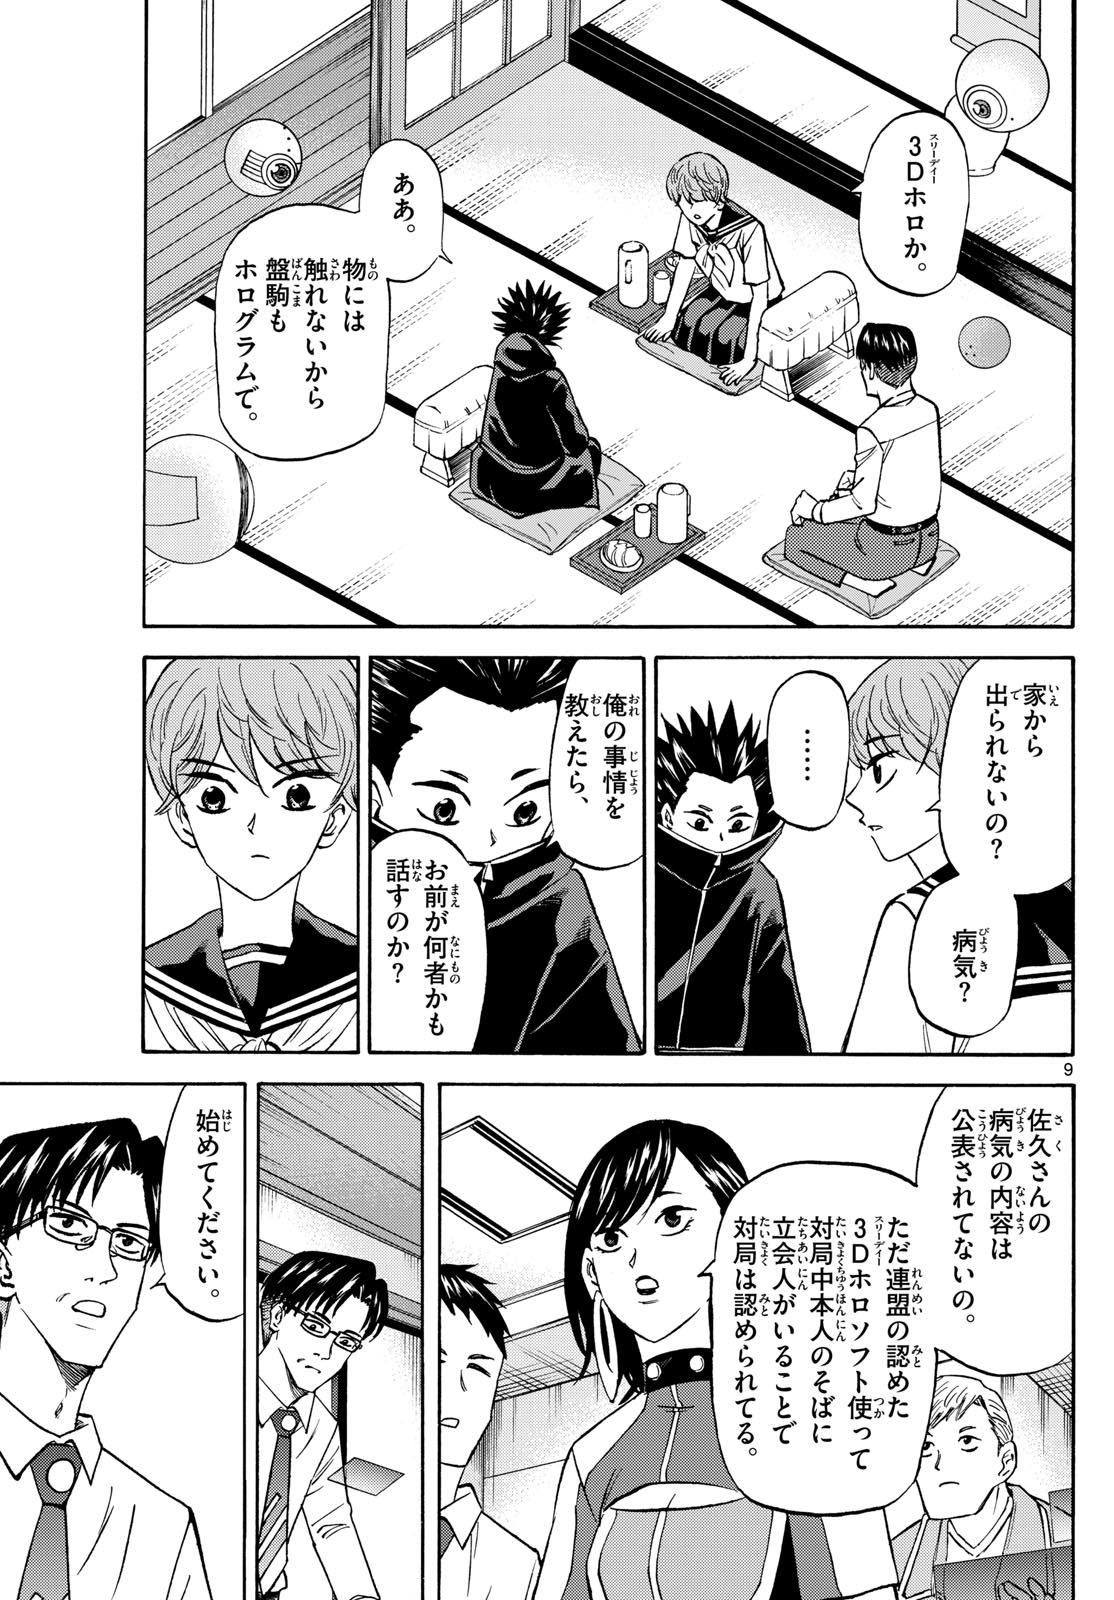 Tatsu to Ichigo - Chapter 191 - Page 9